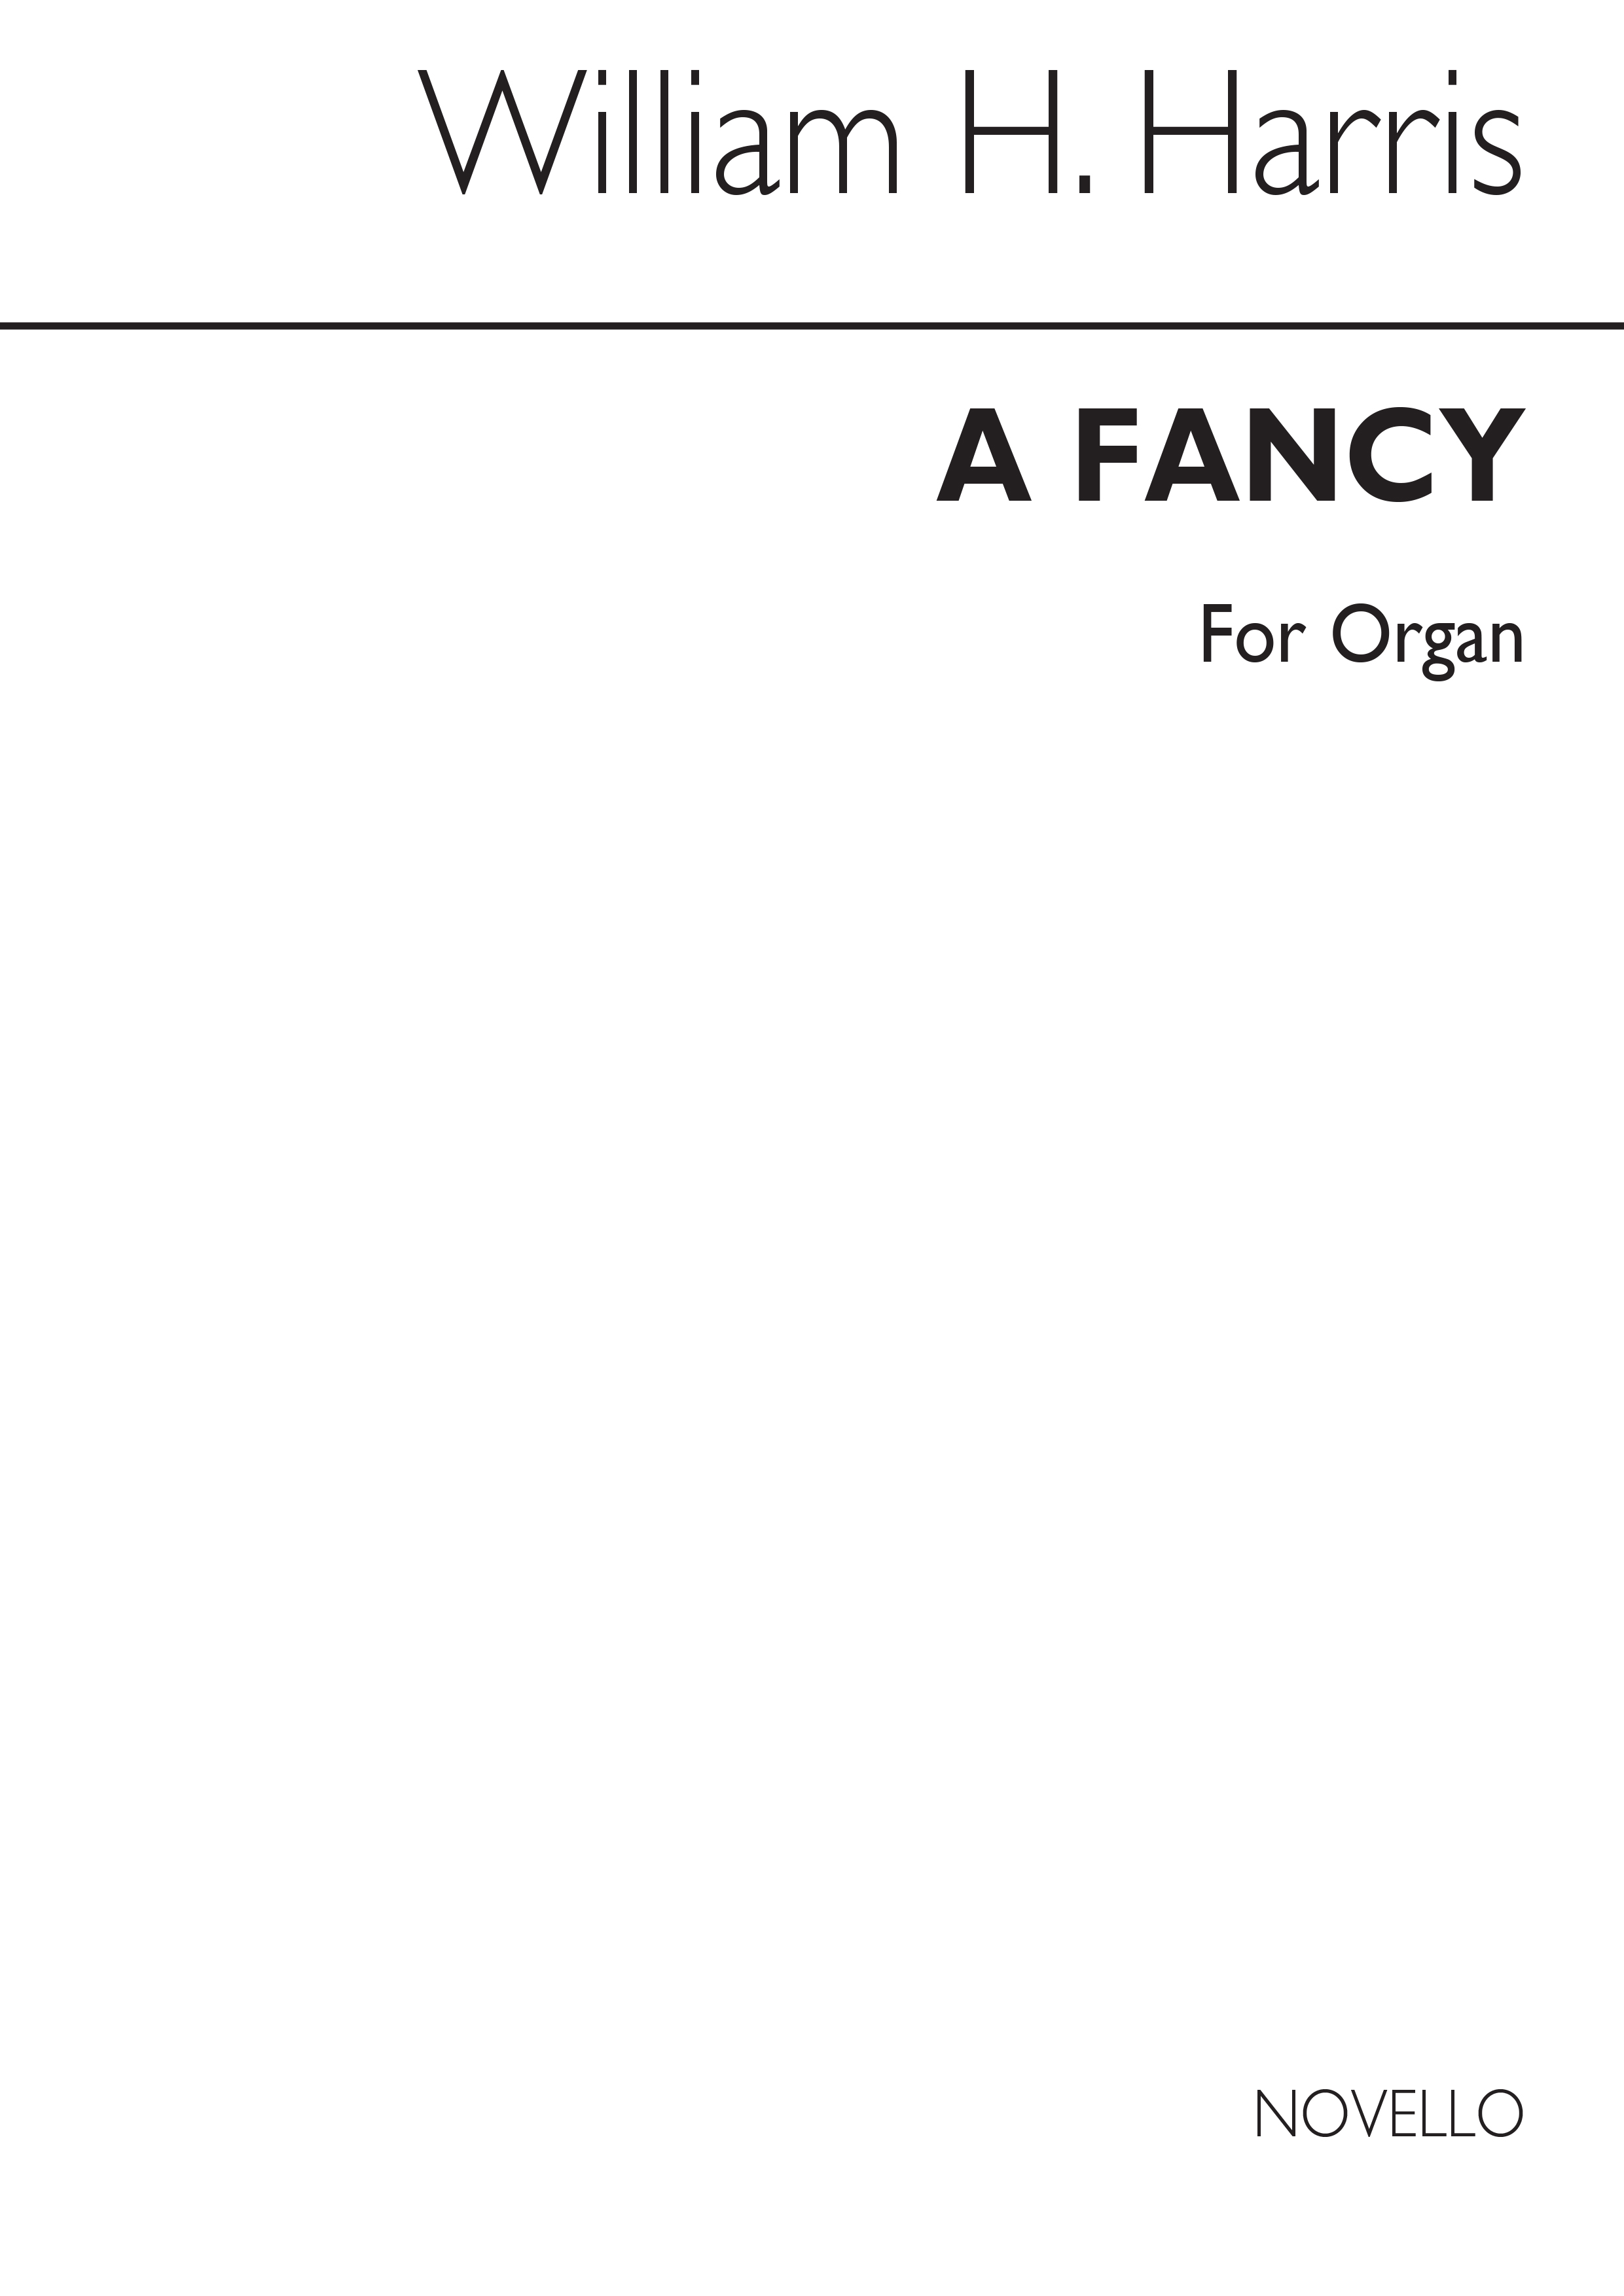 Sir William Henry Harris: A Fancy for Organ: Organ: Instrumental Work